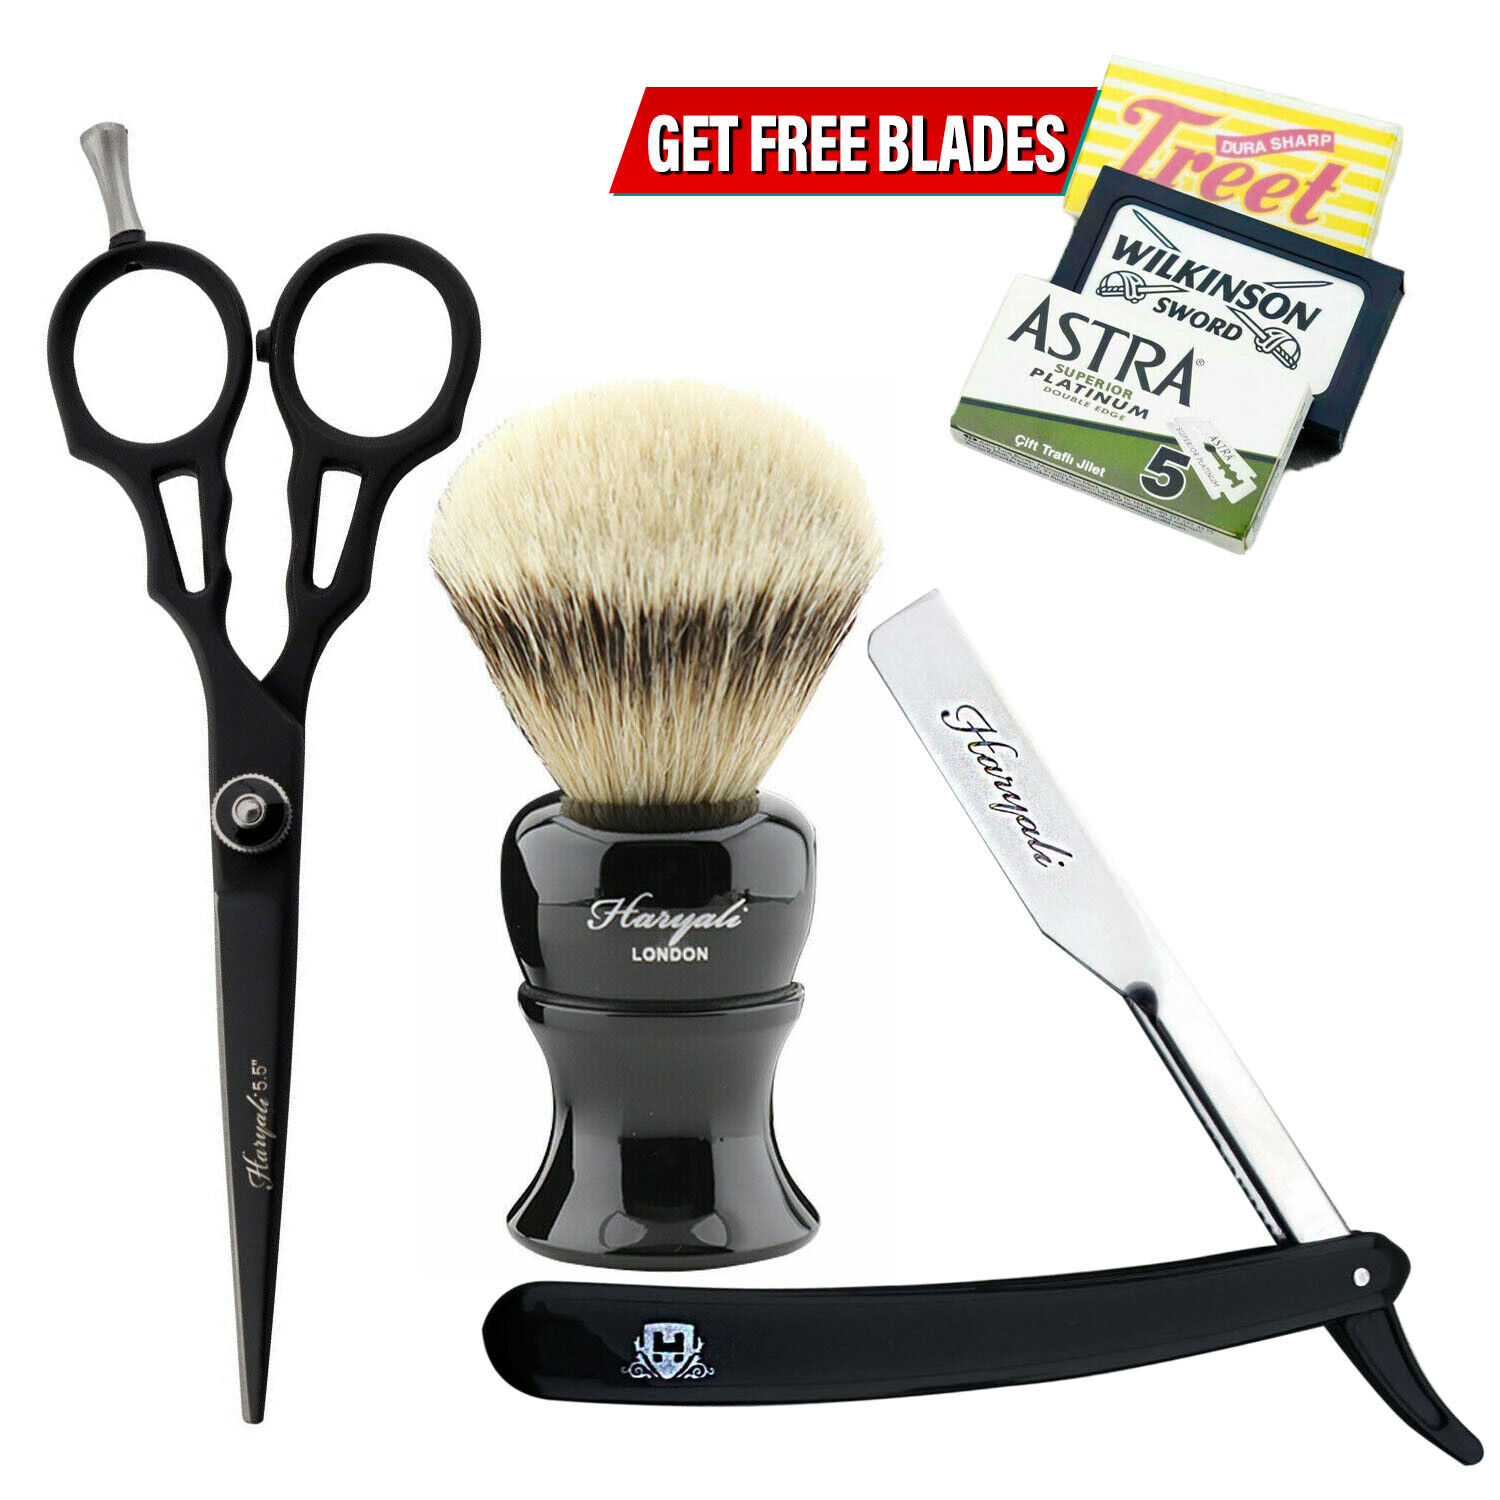 Haircutting & Men's Grooming Shaving Kit Black Razor Sharp Blade Scissors, Brush